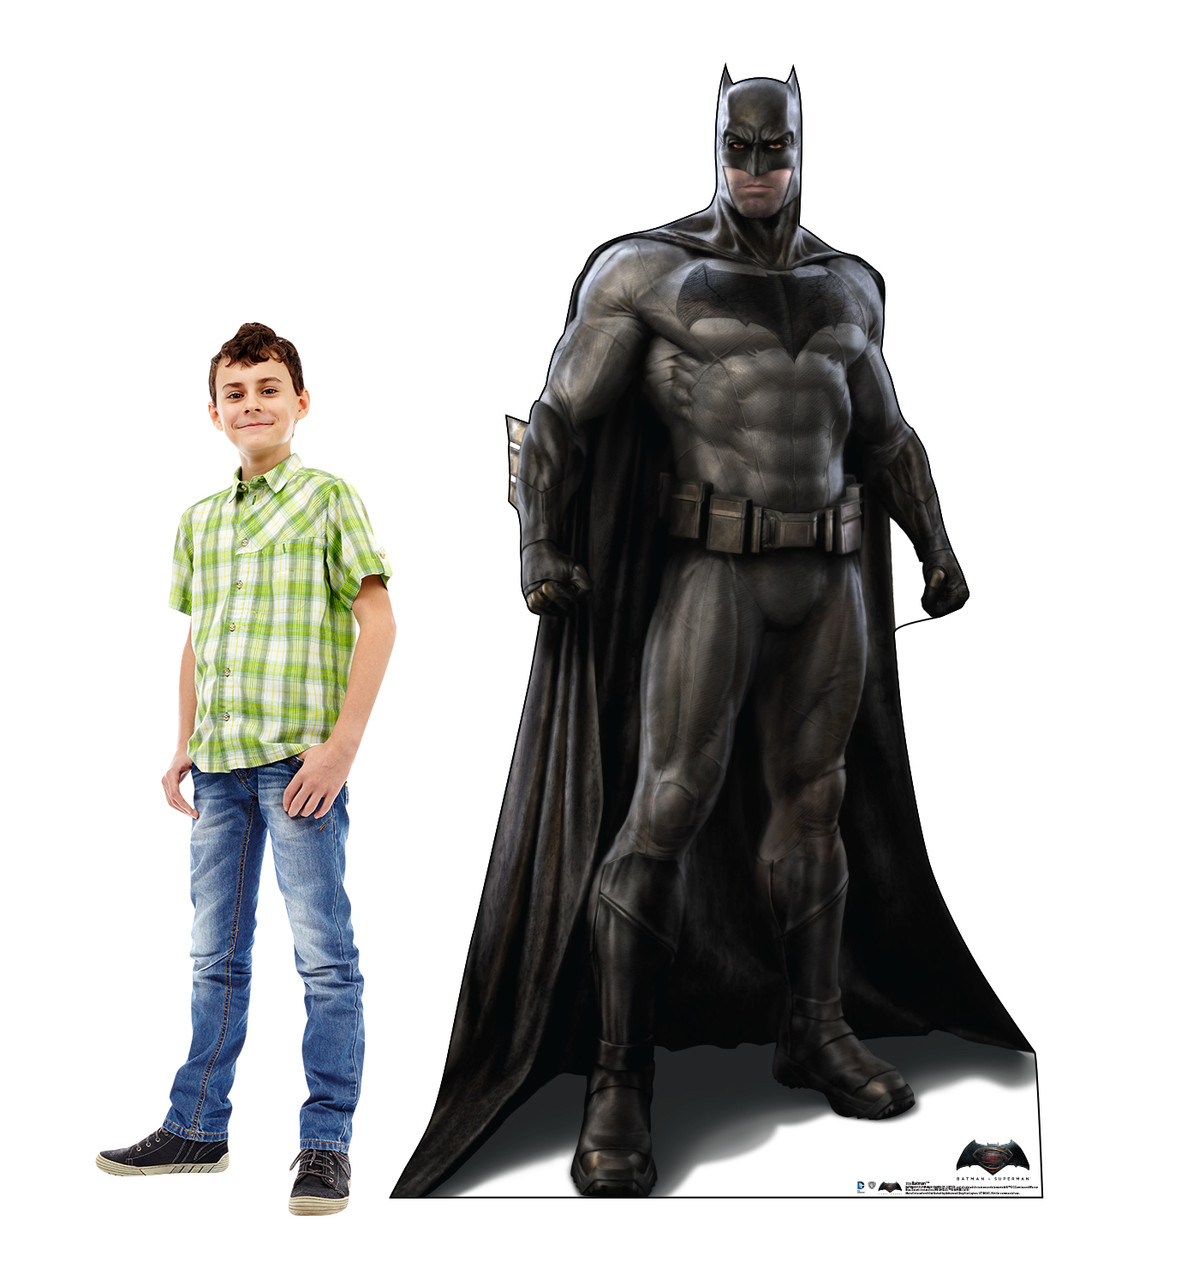 Life-size Batman - Batman V. Superman Cardboard Standup | Cardboard Cutout